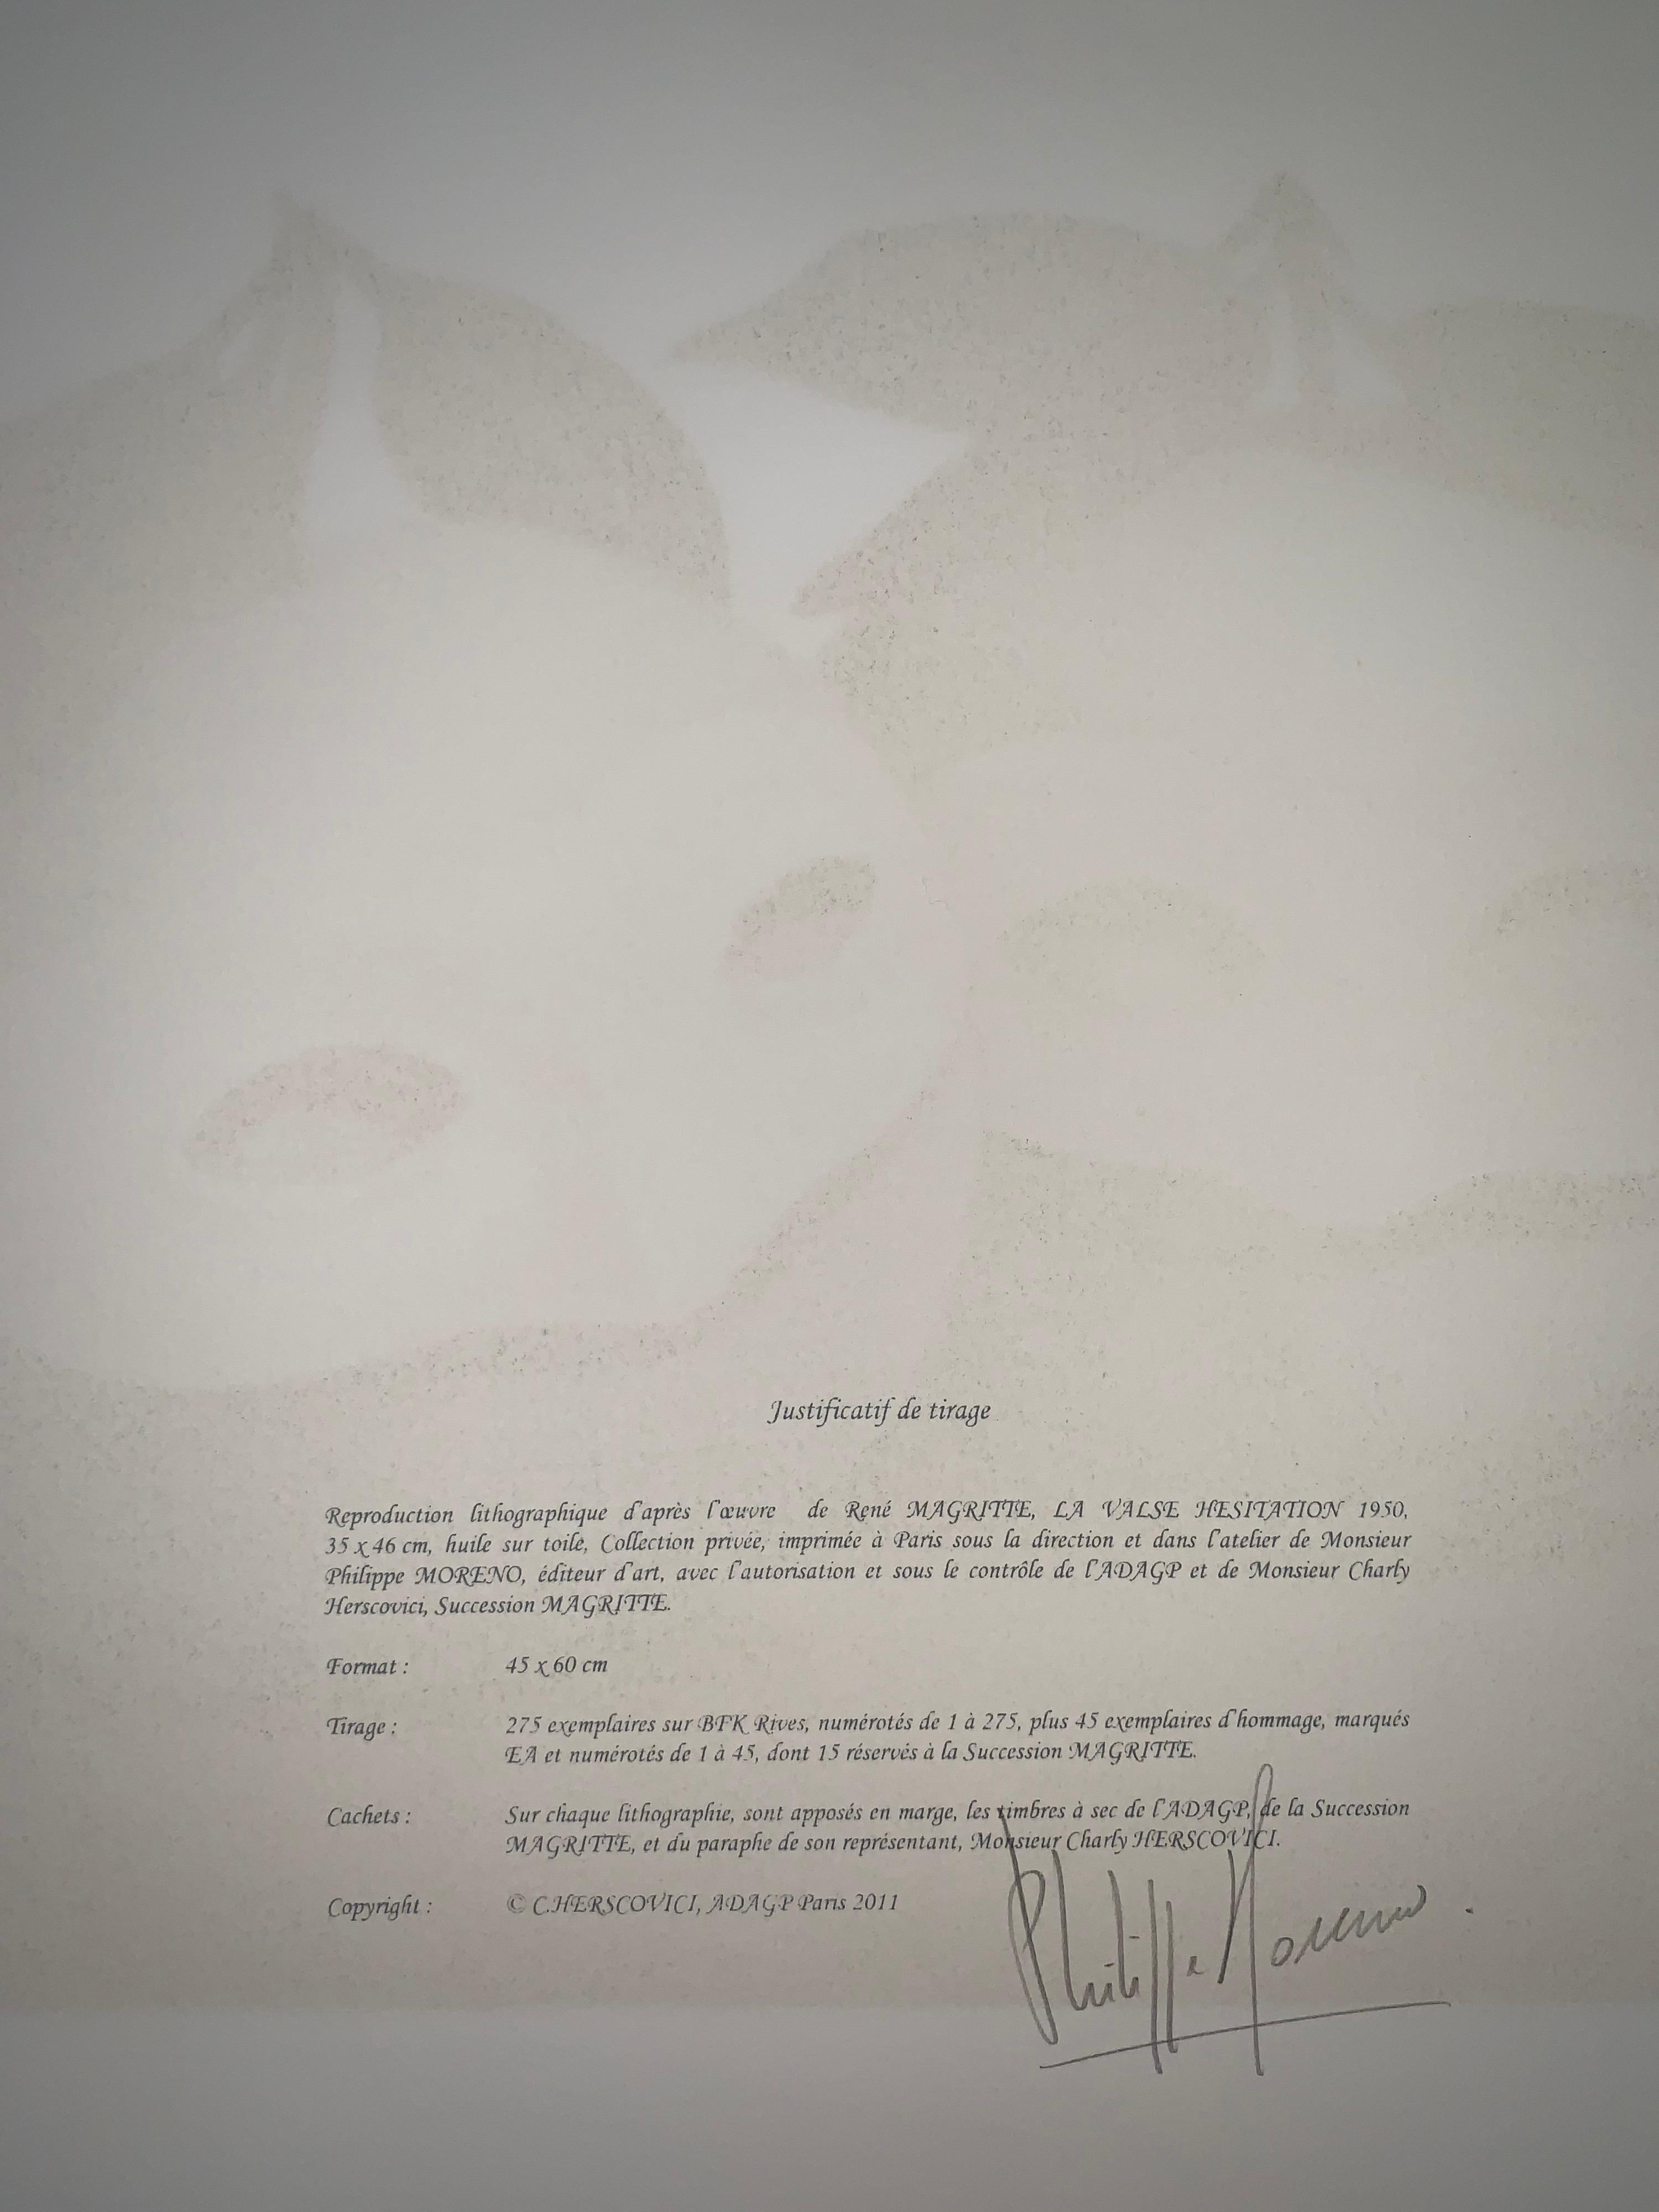 Nummerierung: 138/275
Farblithographie nach dem Öl auf Leinwand von René Magritte aus dem Jahr 1950, signiert von Magritte und nummeriert in einer Auflage von 275 Exemplaren. 
Die Lithographie trägt die Trockenstempel der Magritte-Stiftung und der